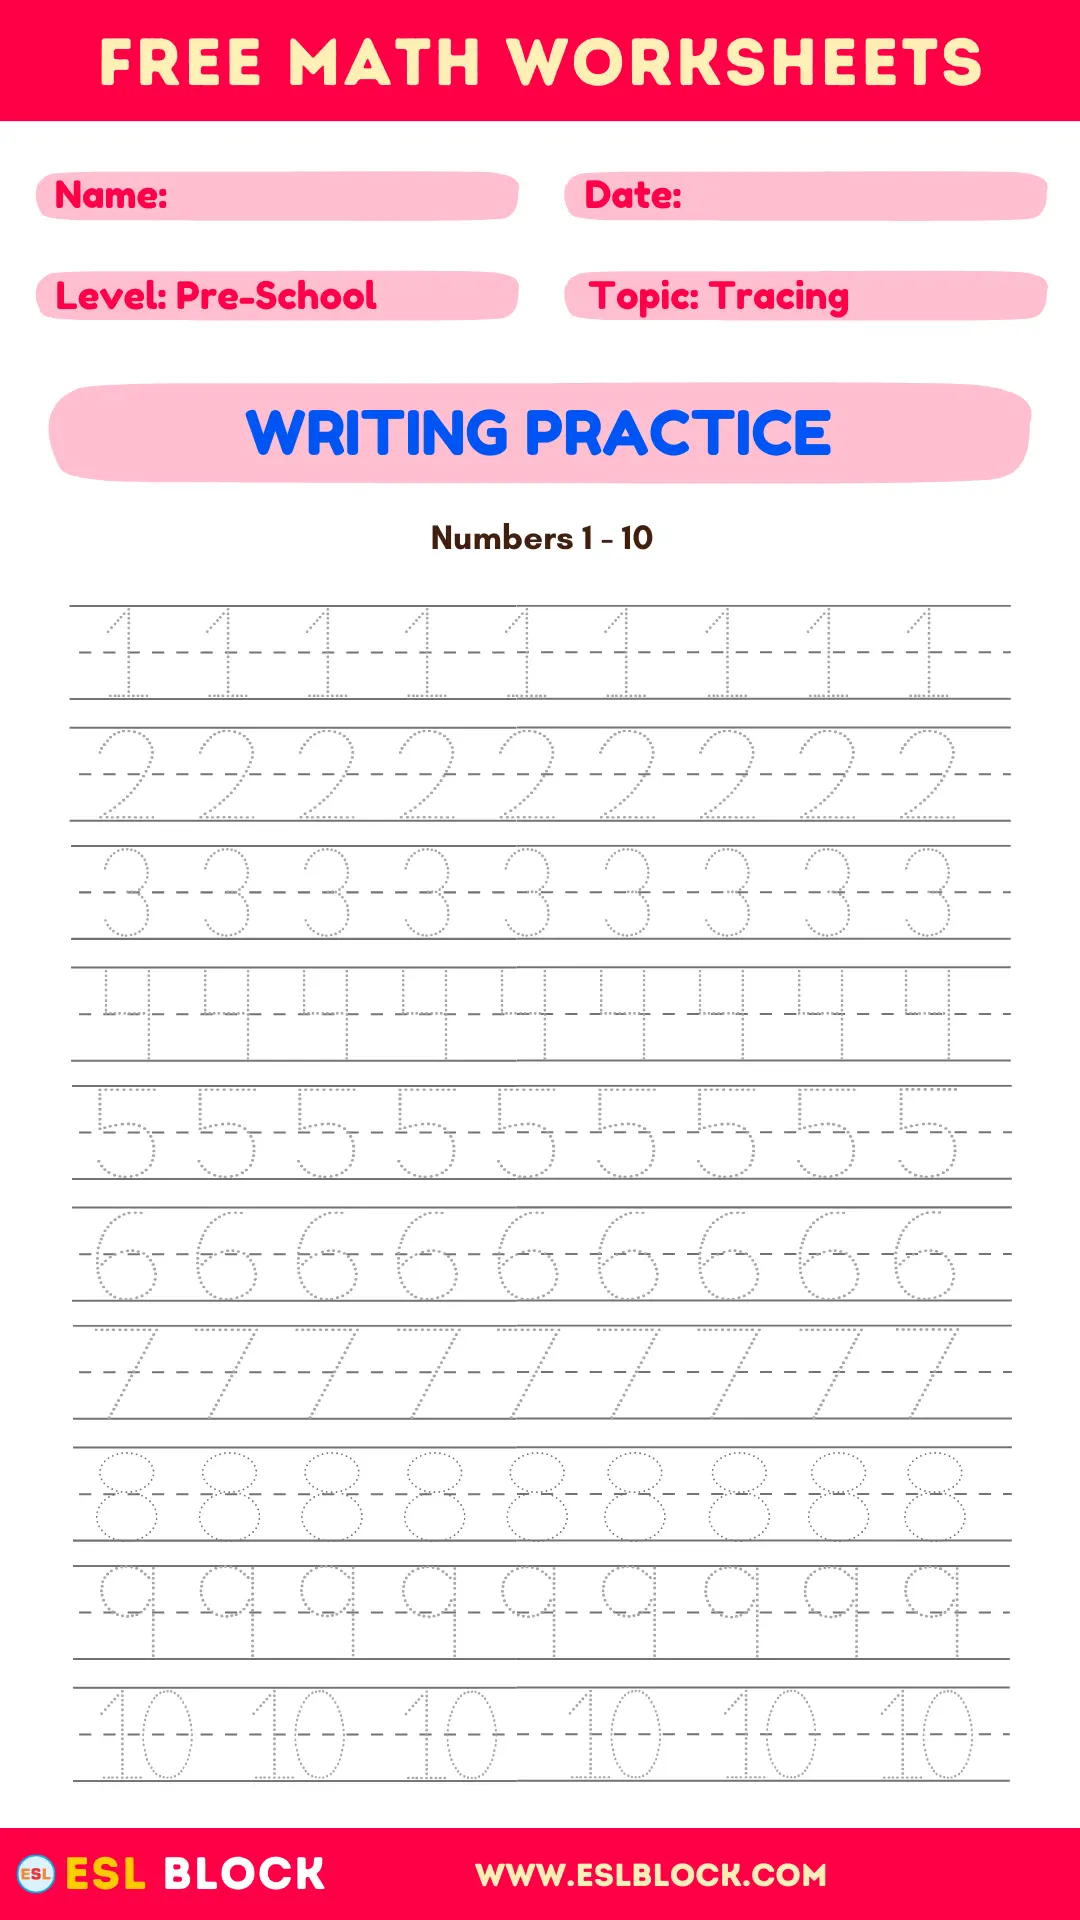 Preschool Writing Worksheets